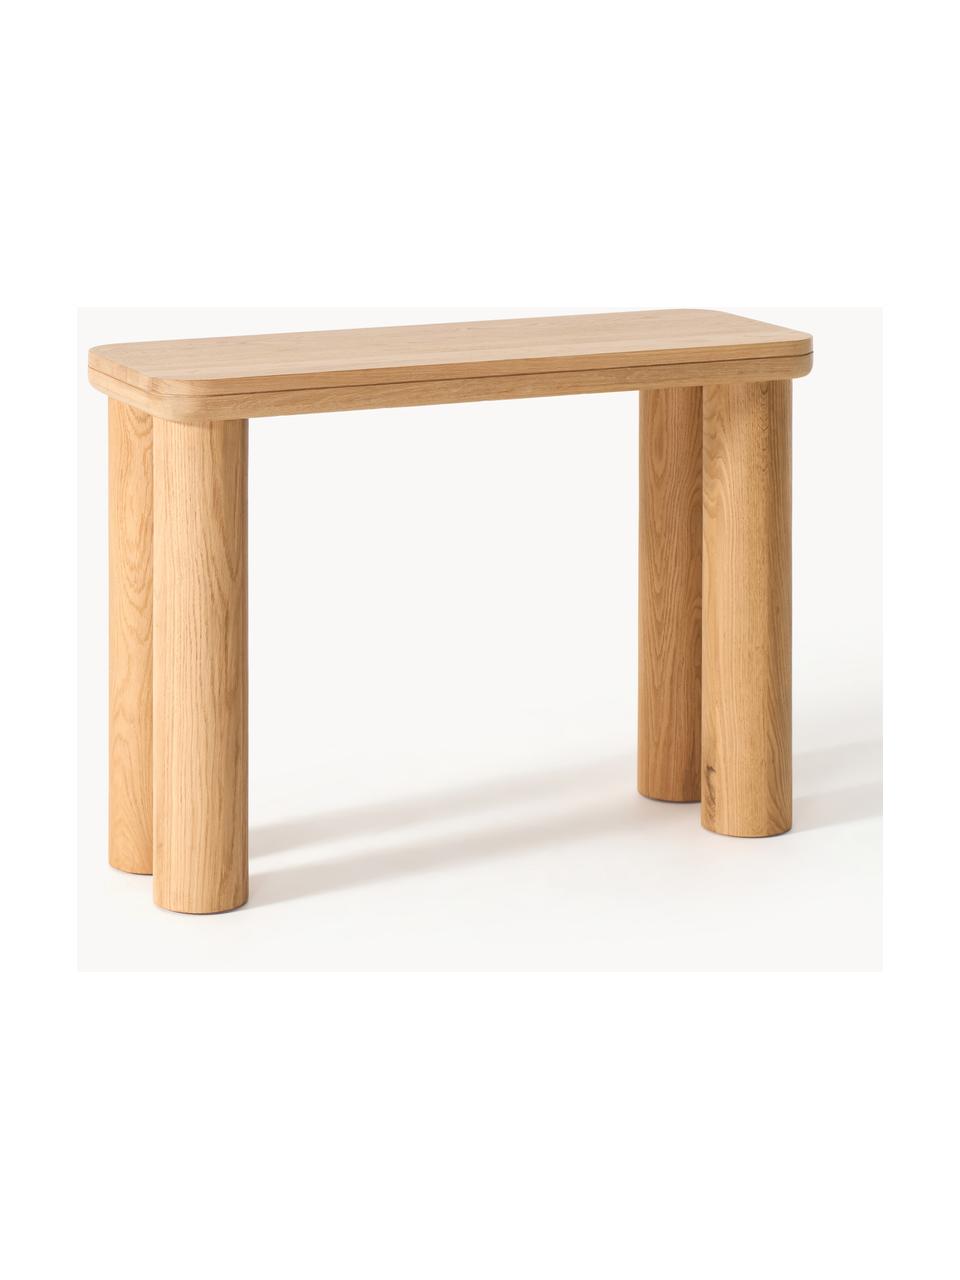 Konzolový stolek z dubového dřeva Kalia, Masivní dubové dřevo

Tento produkt je vyroben z udržitelných zdrojů dřeva s certifikací FSC®., Olejované dubové dřevo, Š 110 cm, V 77 cm